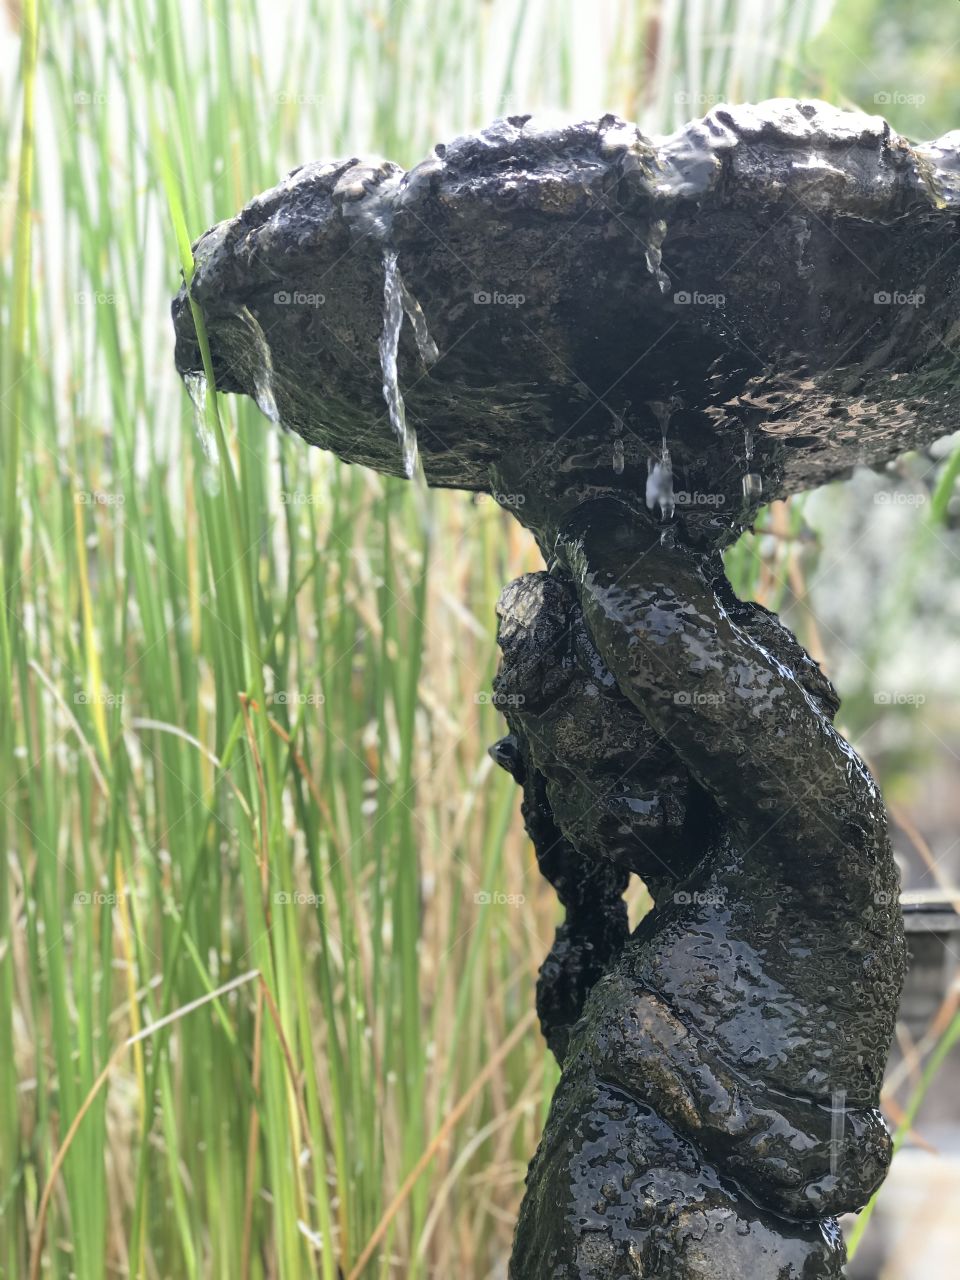 Fountain in my backyard